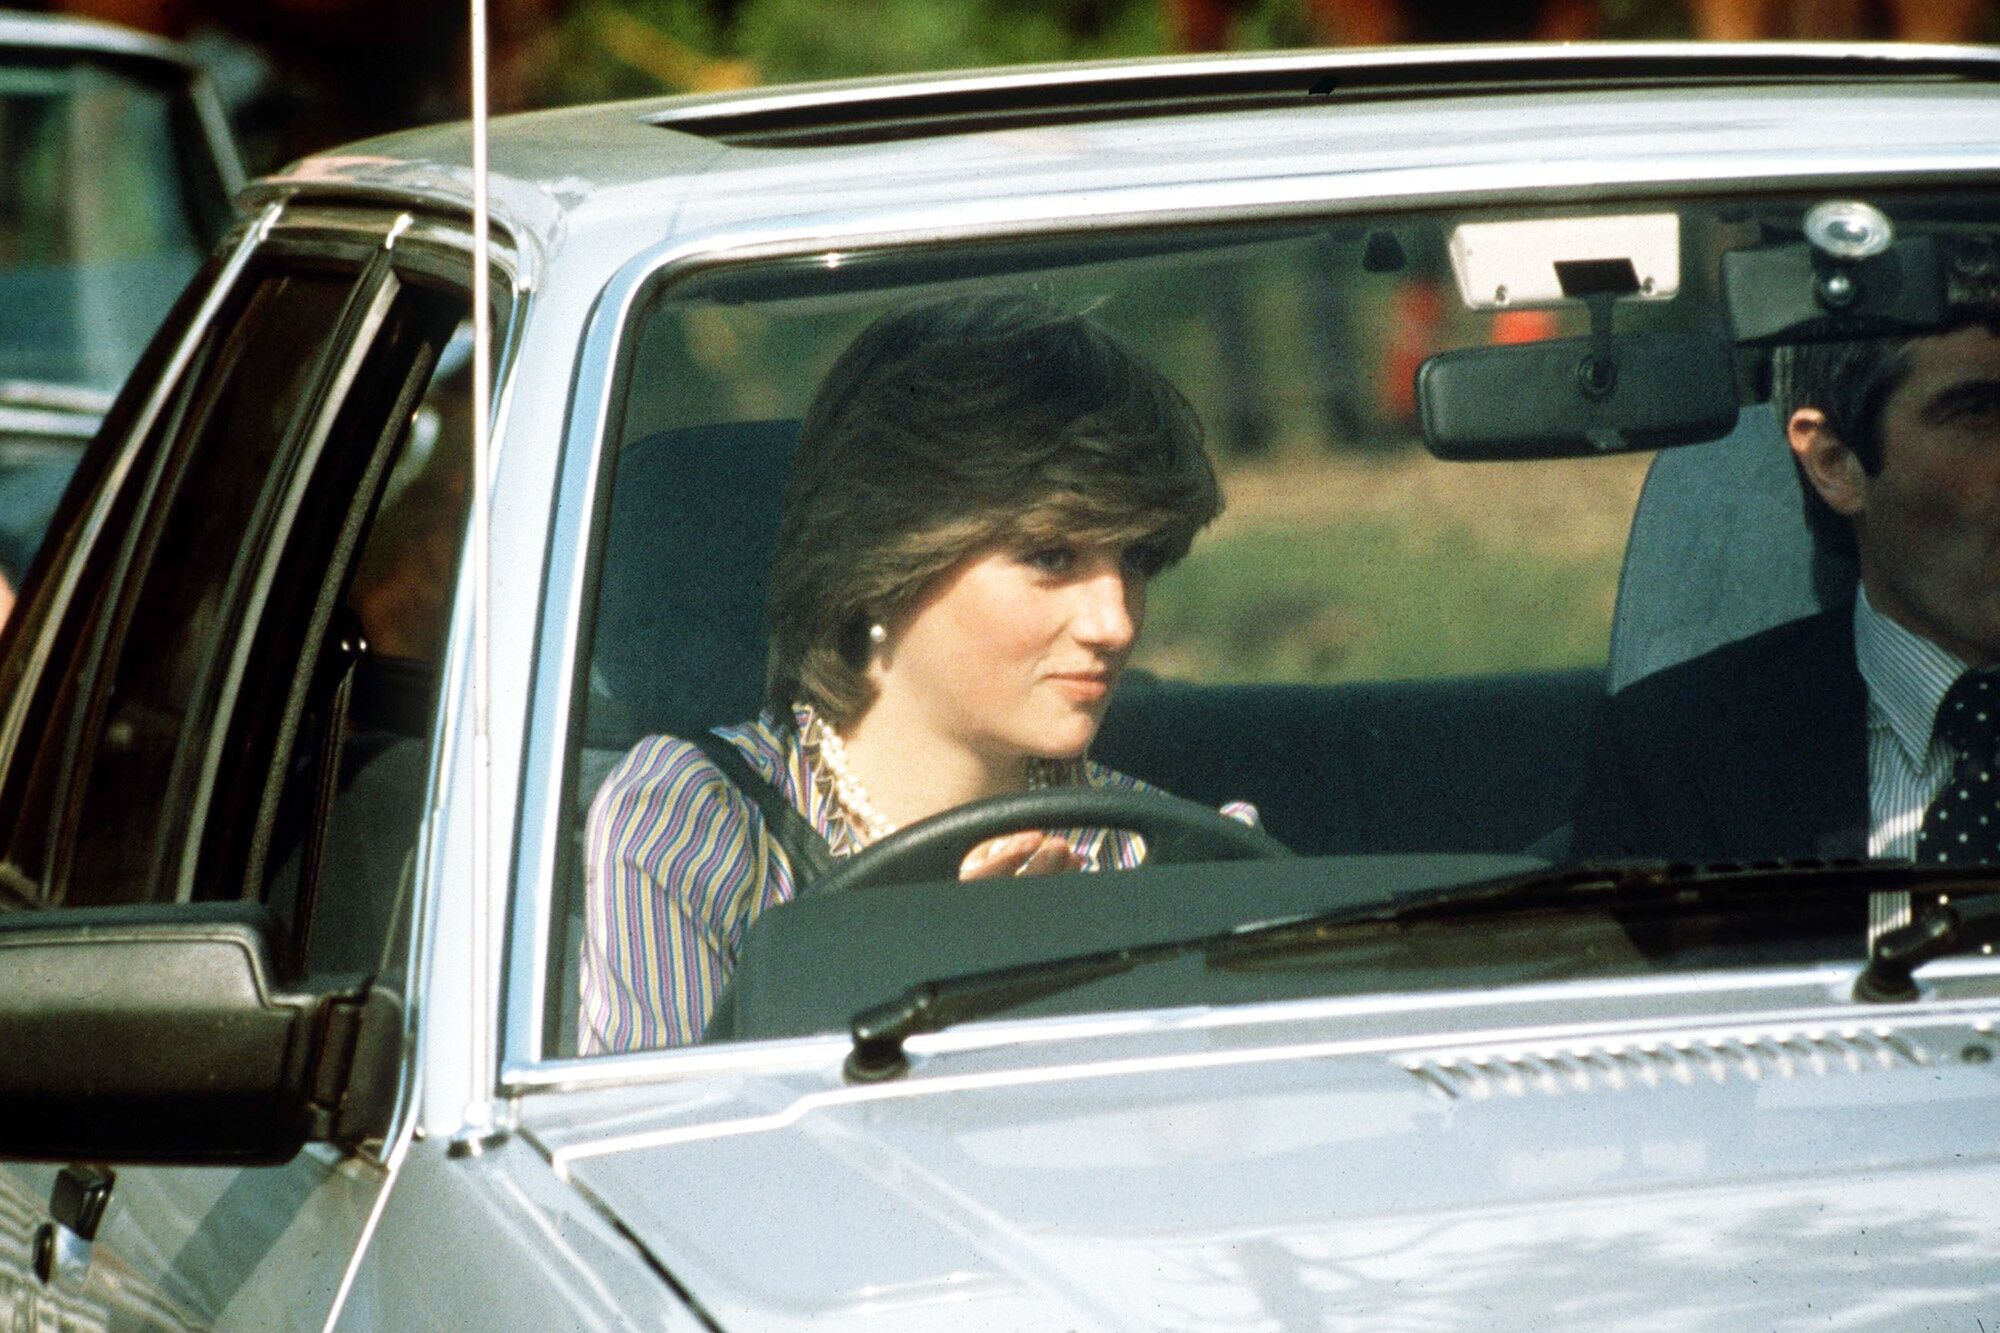 Ford Escort 1981 của công nương Diana sẽđược đấu giá vào cuối tháng 6-2